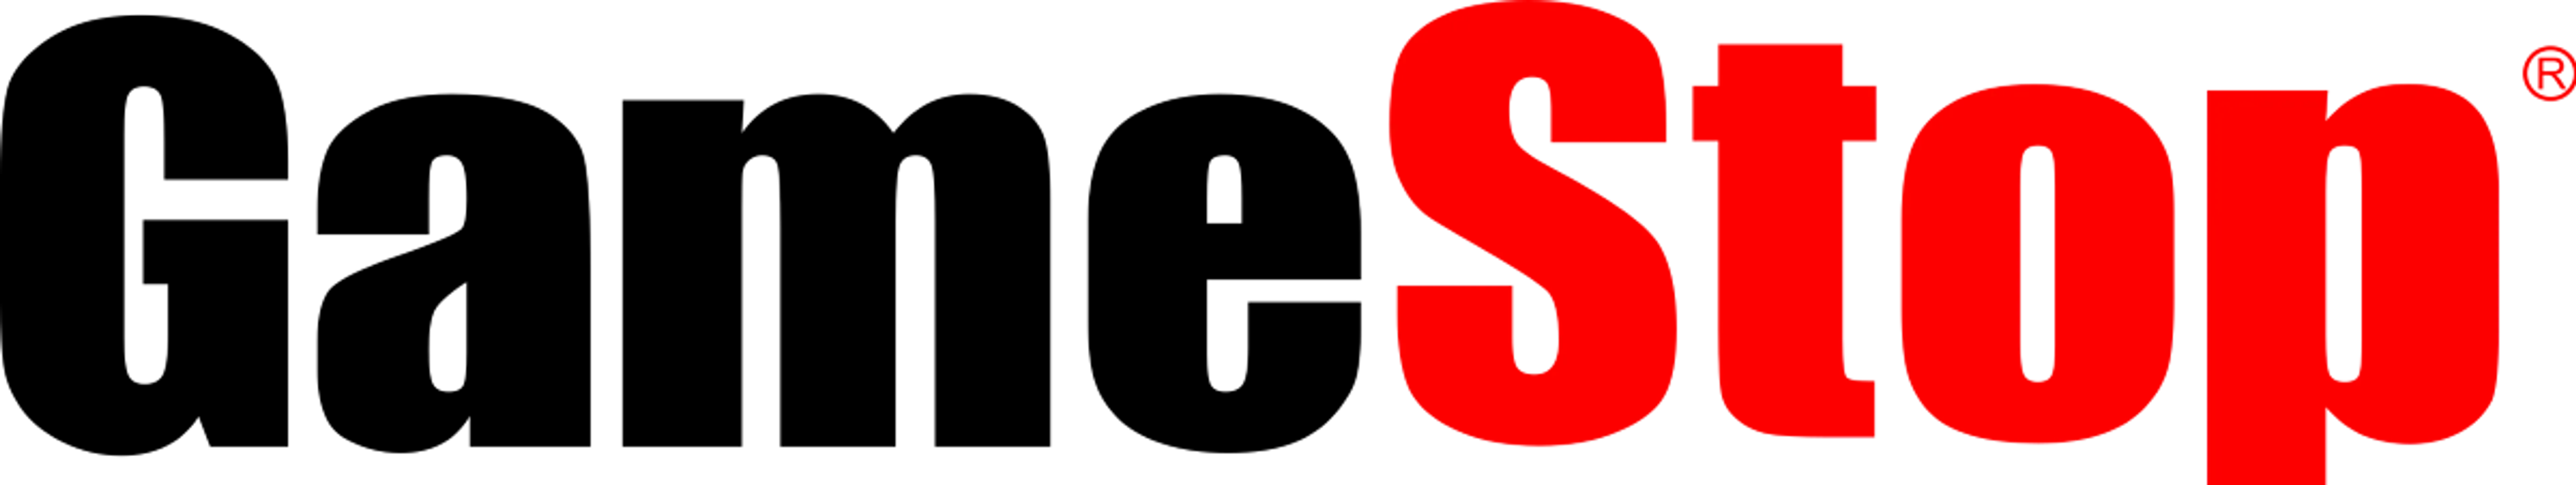 GAME STOP logo